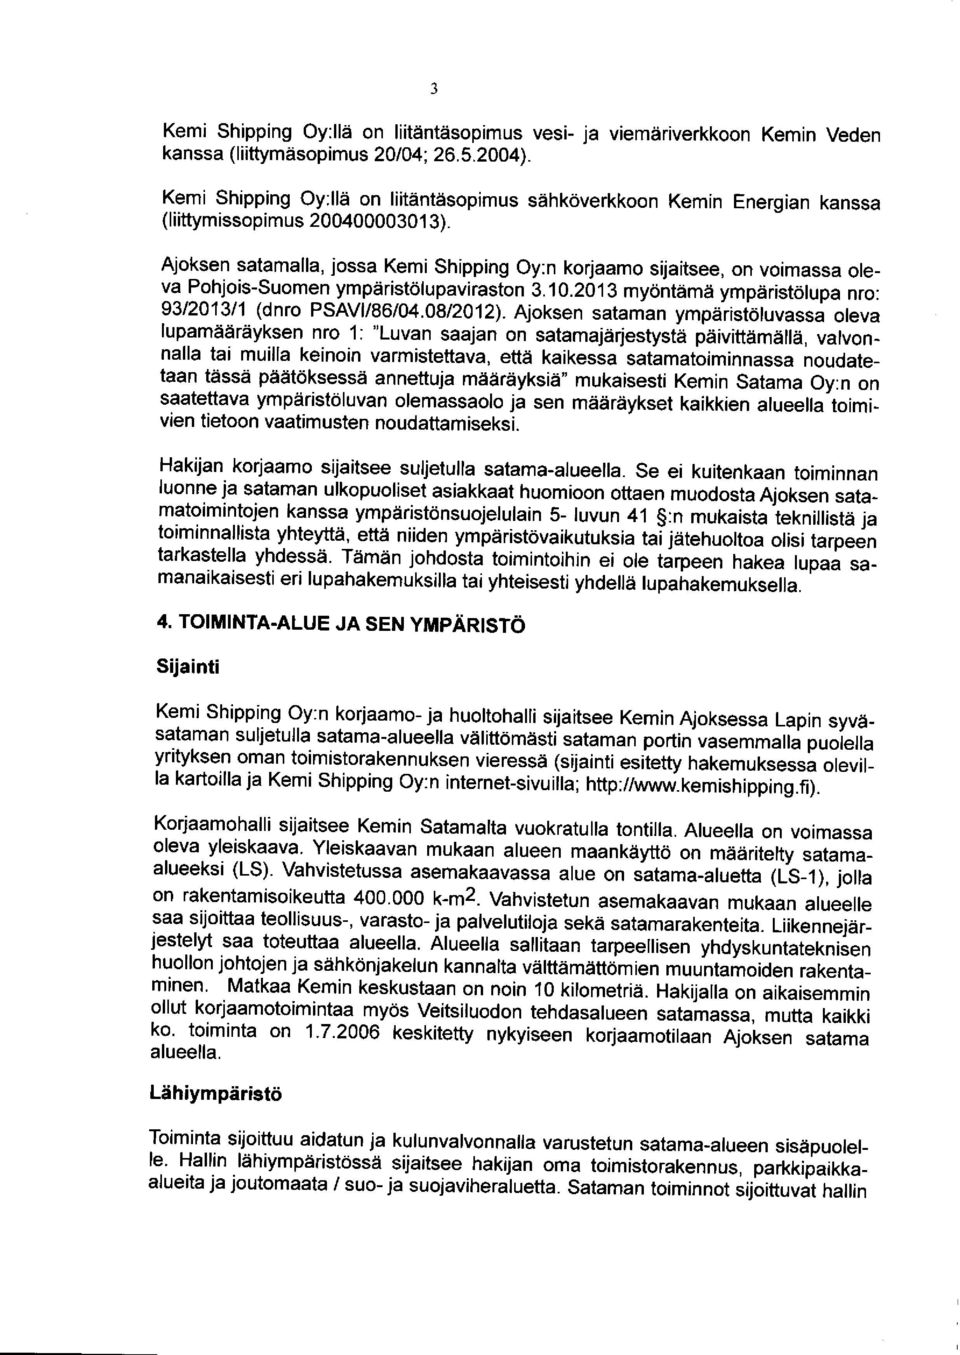 Ajoksen satamalla, jossa Kemi Shipping Oy:n korjaamo sijaitsee, on voimassa oleva Pohjois-Suomen ympäristölupaviraston 3.10.2013 myöntämä ympäristölupa nro: 93/2013/1 (dnro PSAVI/86/04.08/2012).